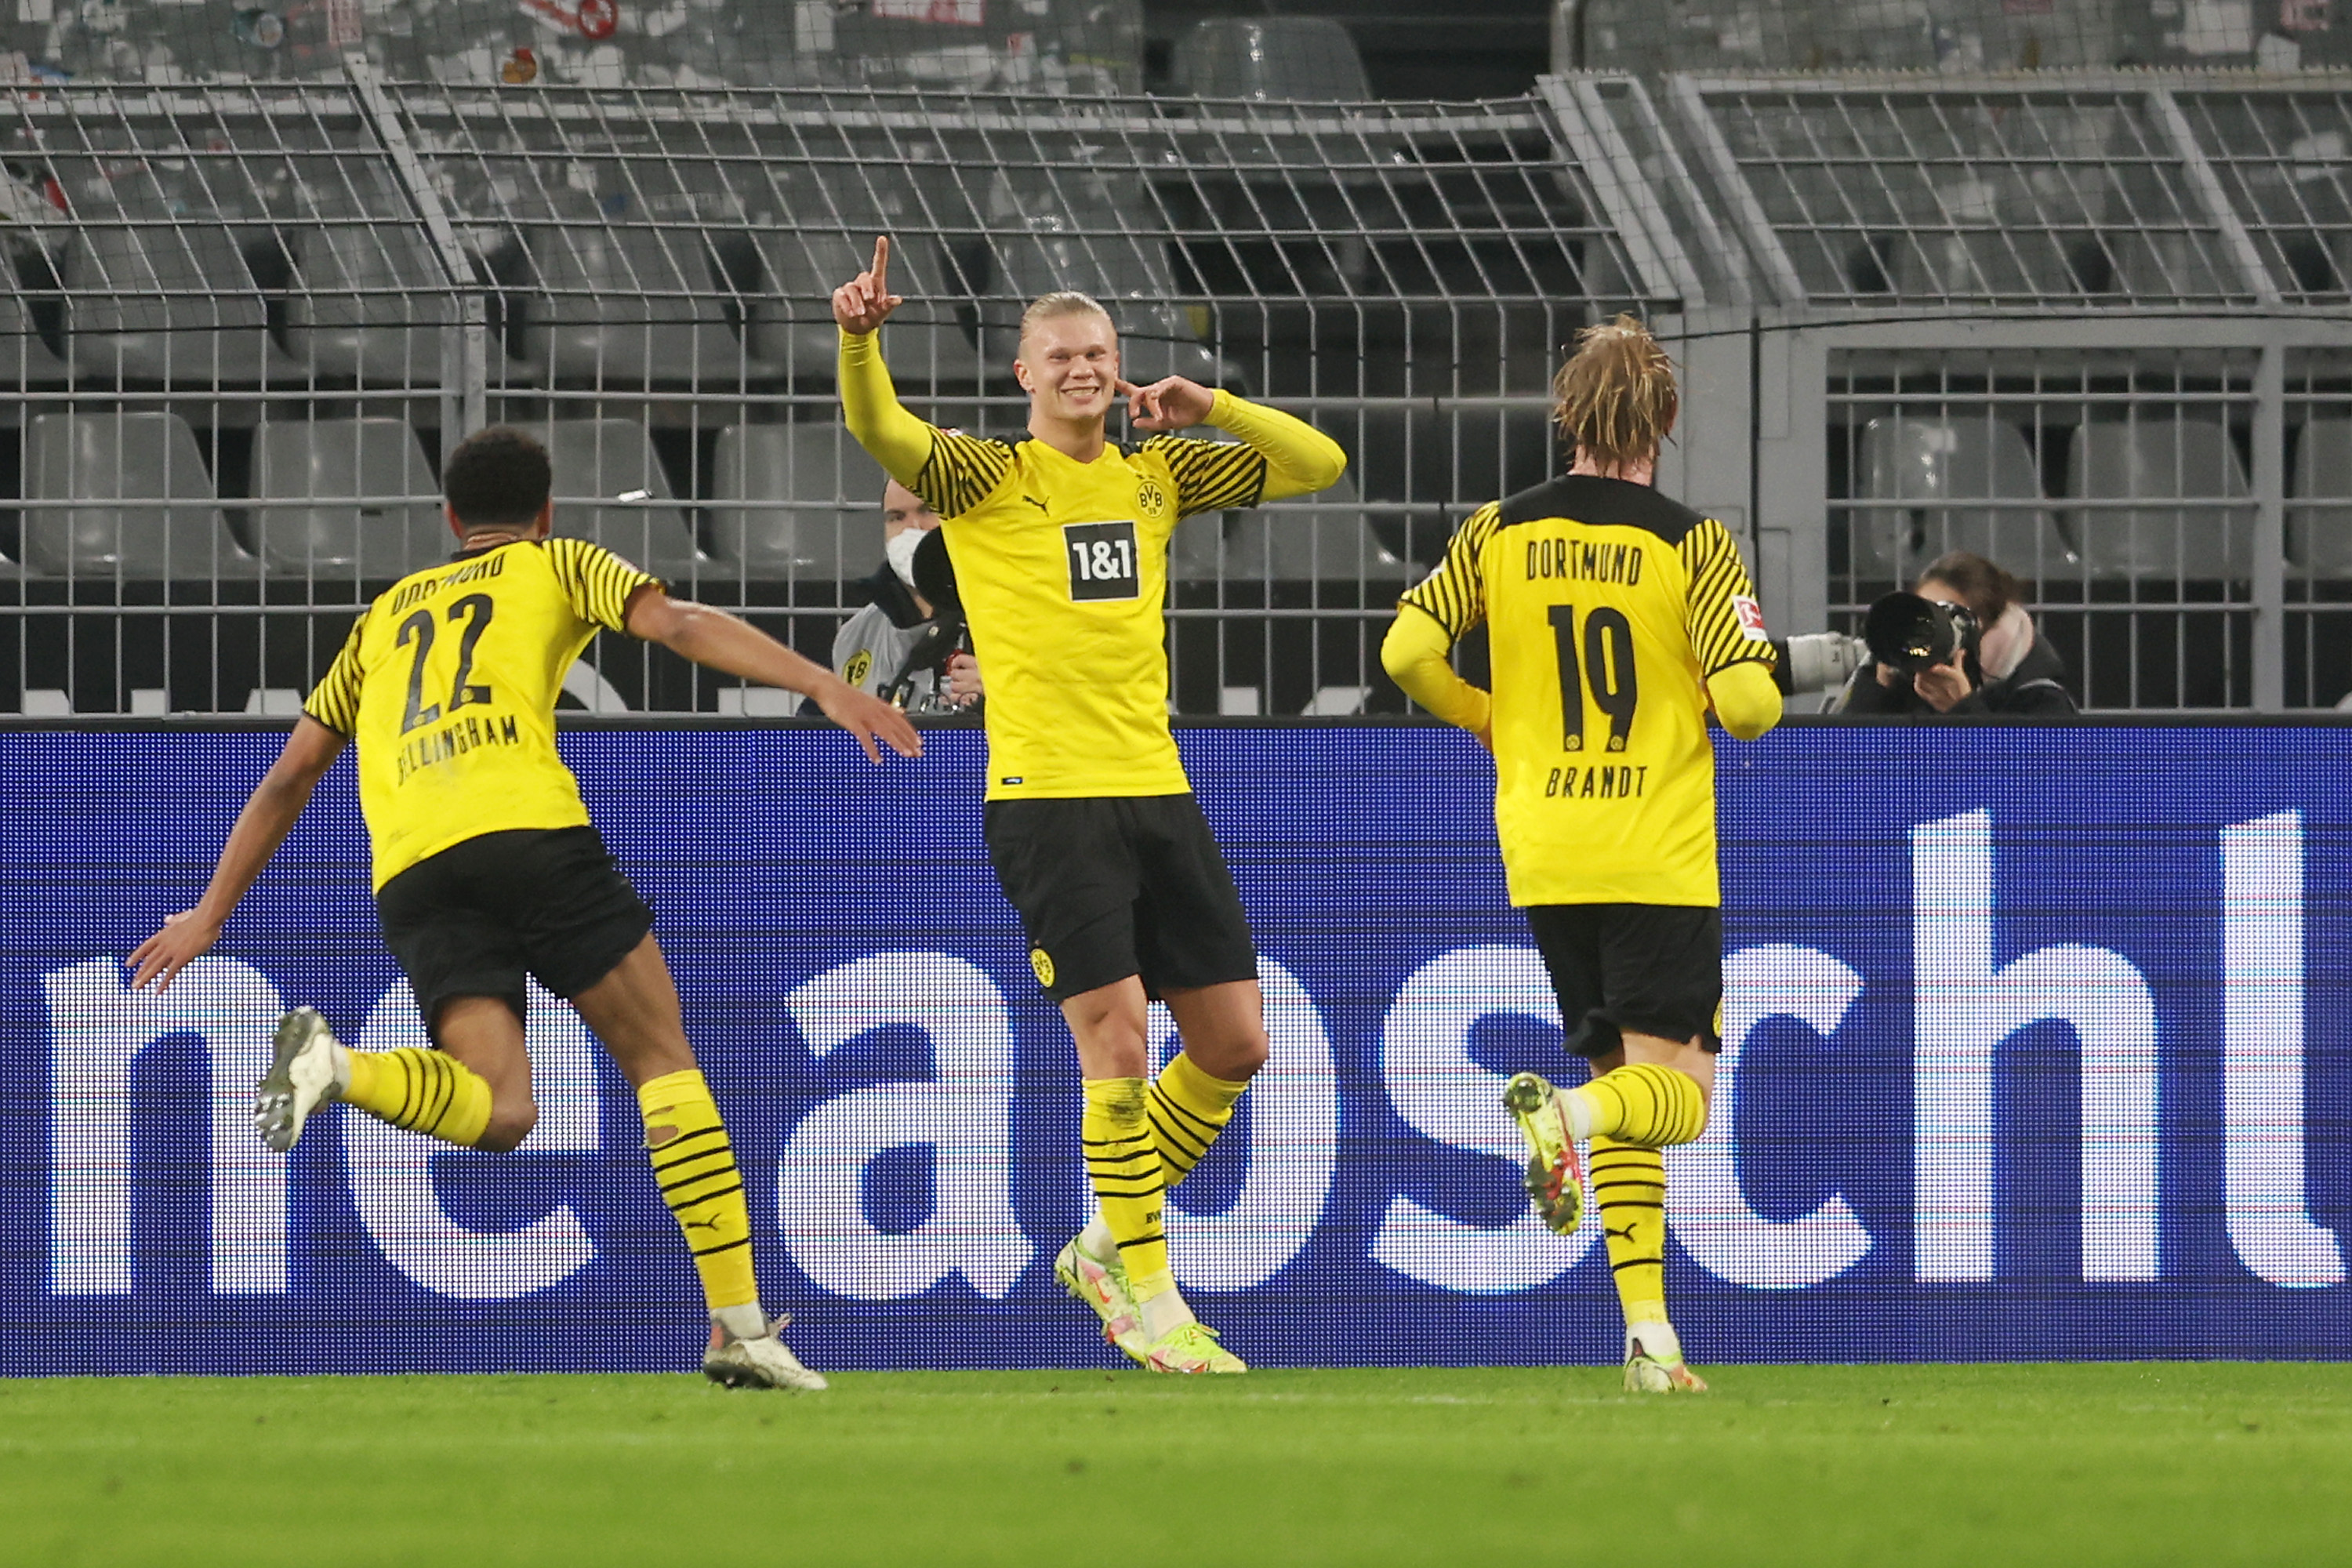 Borussia Dortmund - Freiburg 5-1. Spectacol total cu Haaland și Meunier, care au reușit câte o dublă